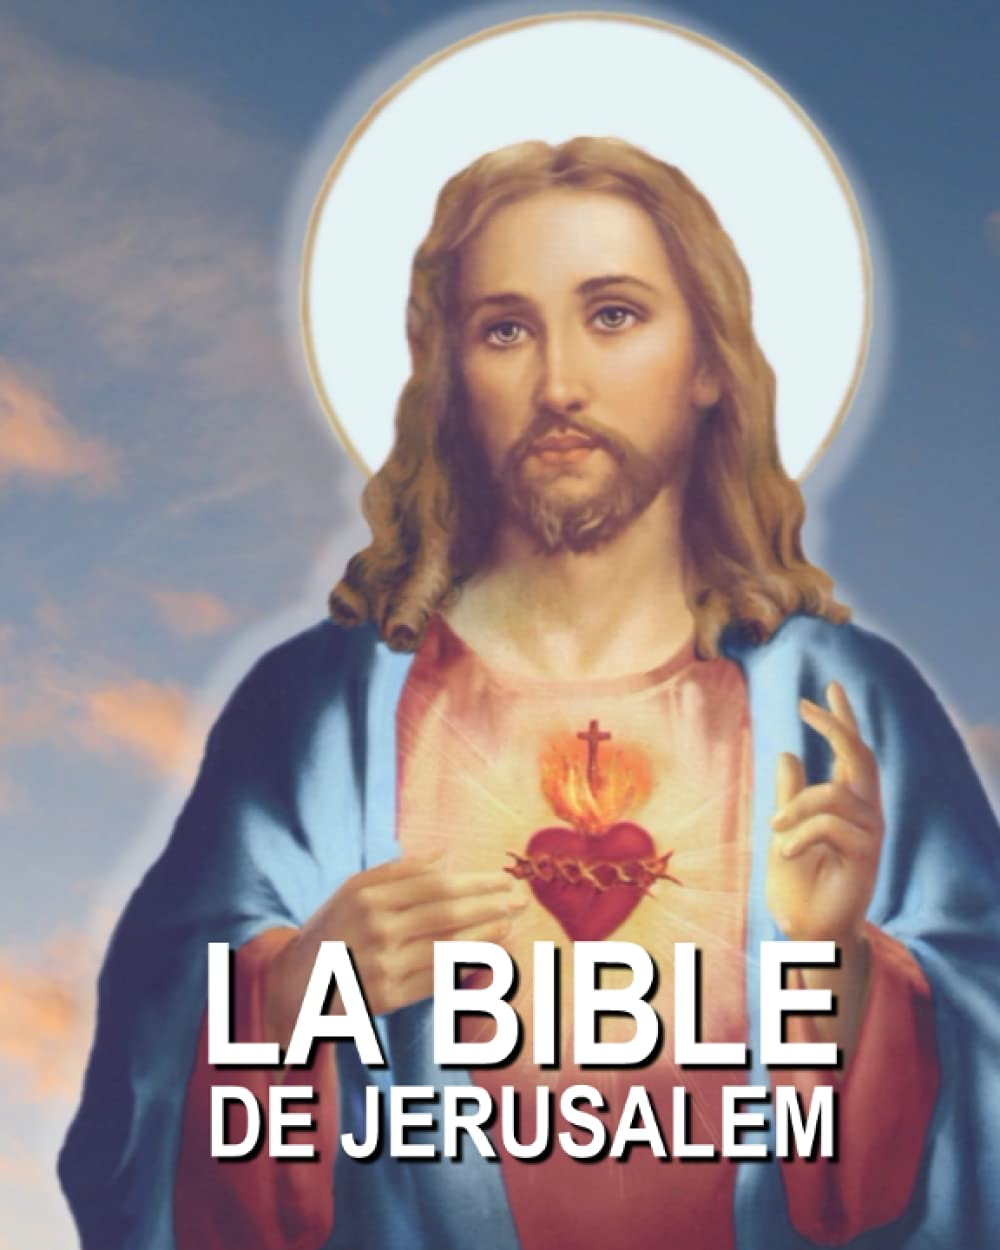 La bible de jérusalem (French Edition)